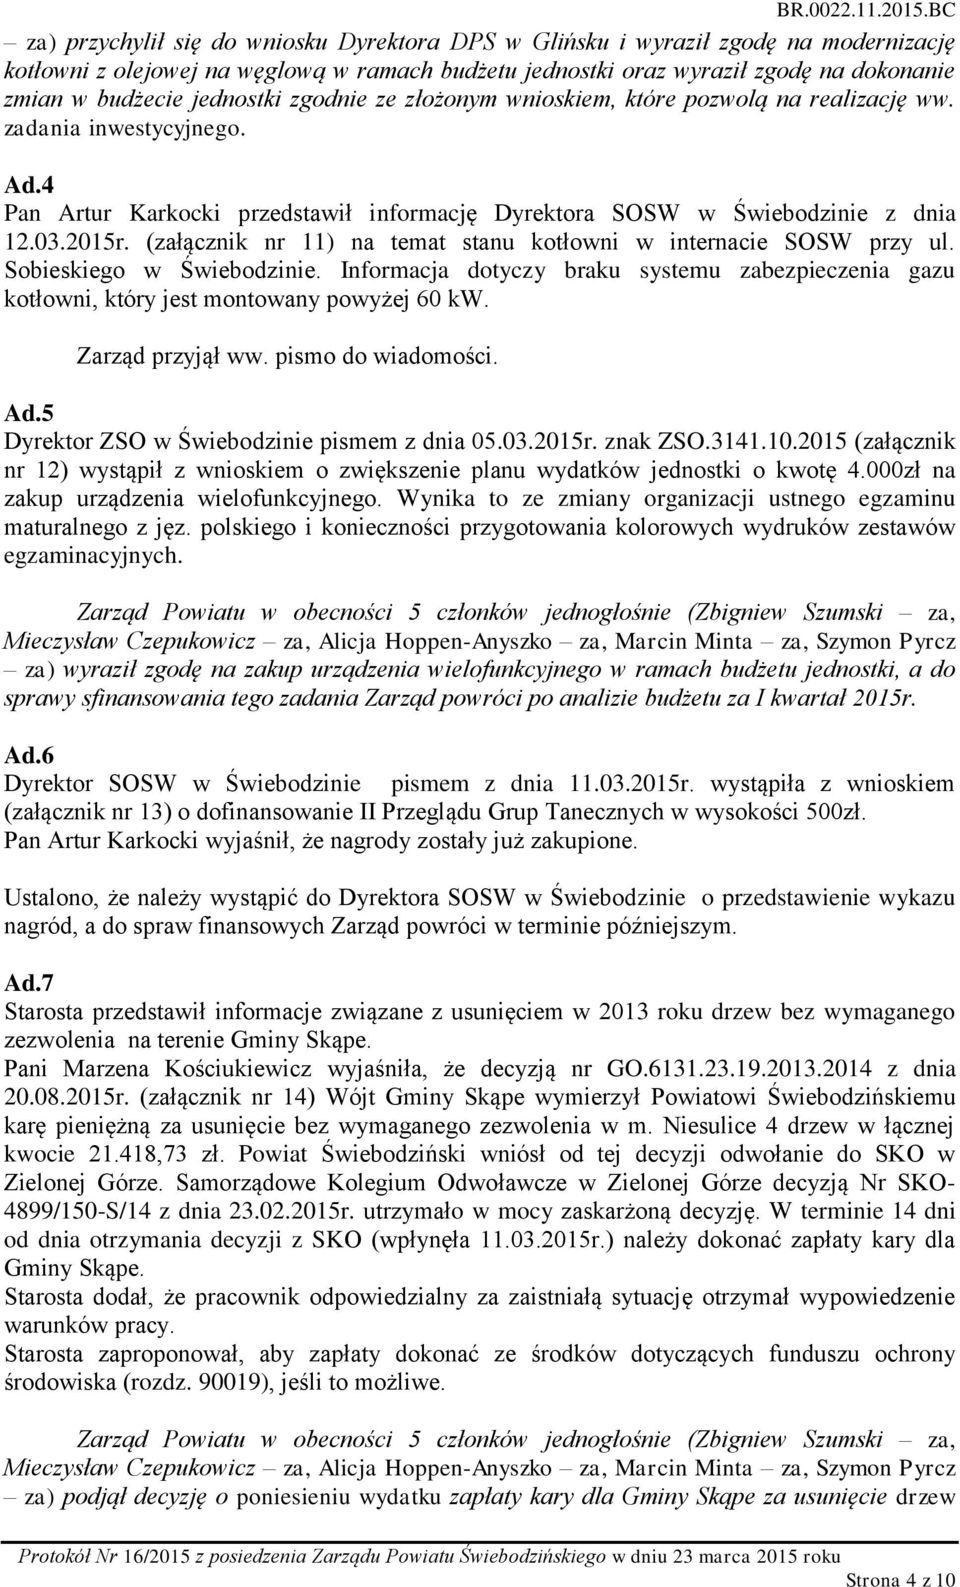 (załącznik nr 11) na temat stanu kotłowni w internacie SOSW przy ul. Sobieskiego w Świebodzinie. Informacja dotyczy braku systemu zabezpieczenia gazu kotłowni, który jest montowany powyżej 60 kw.